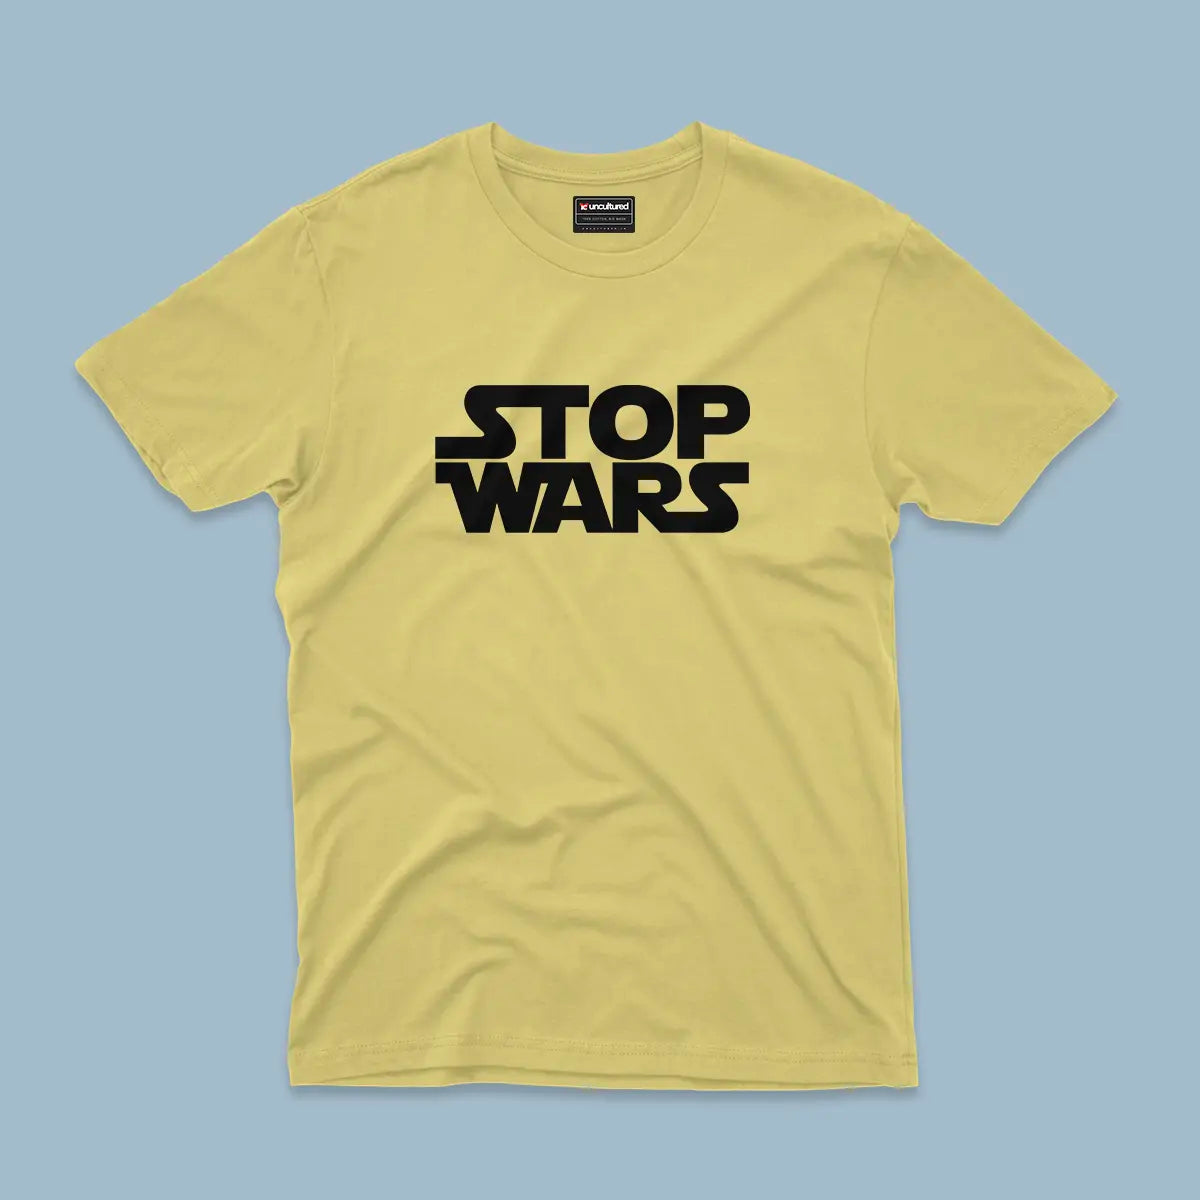 Stop wars - Unisex